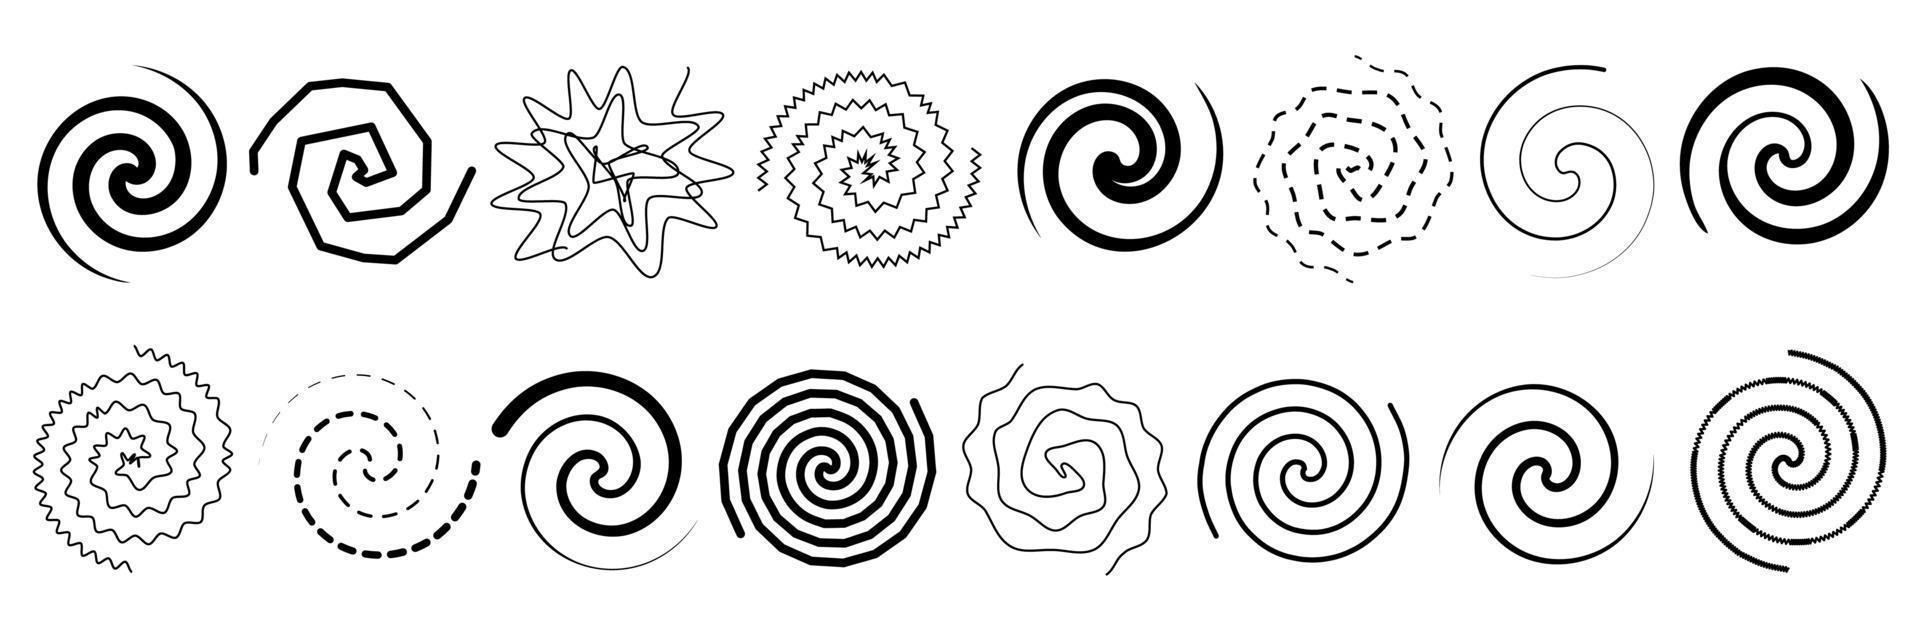 ensemble de abstrait spirales et virevolte. vecteur illustration de lignes tordu dans cercle. noir et blanc dessin de panneaux de rond tourbillonne et ondulé tourbillons.